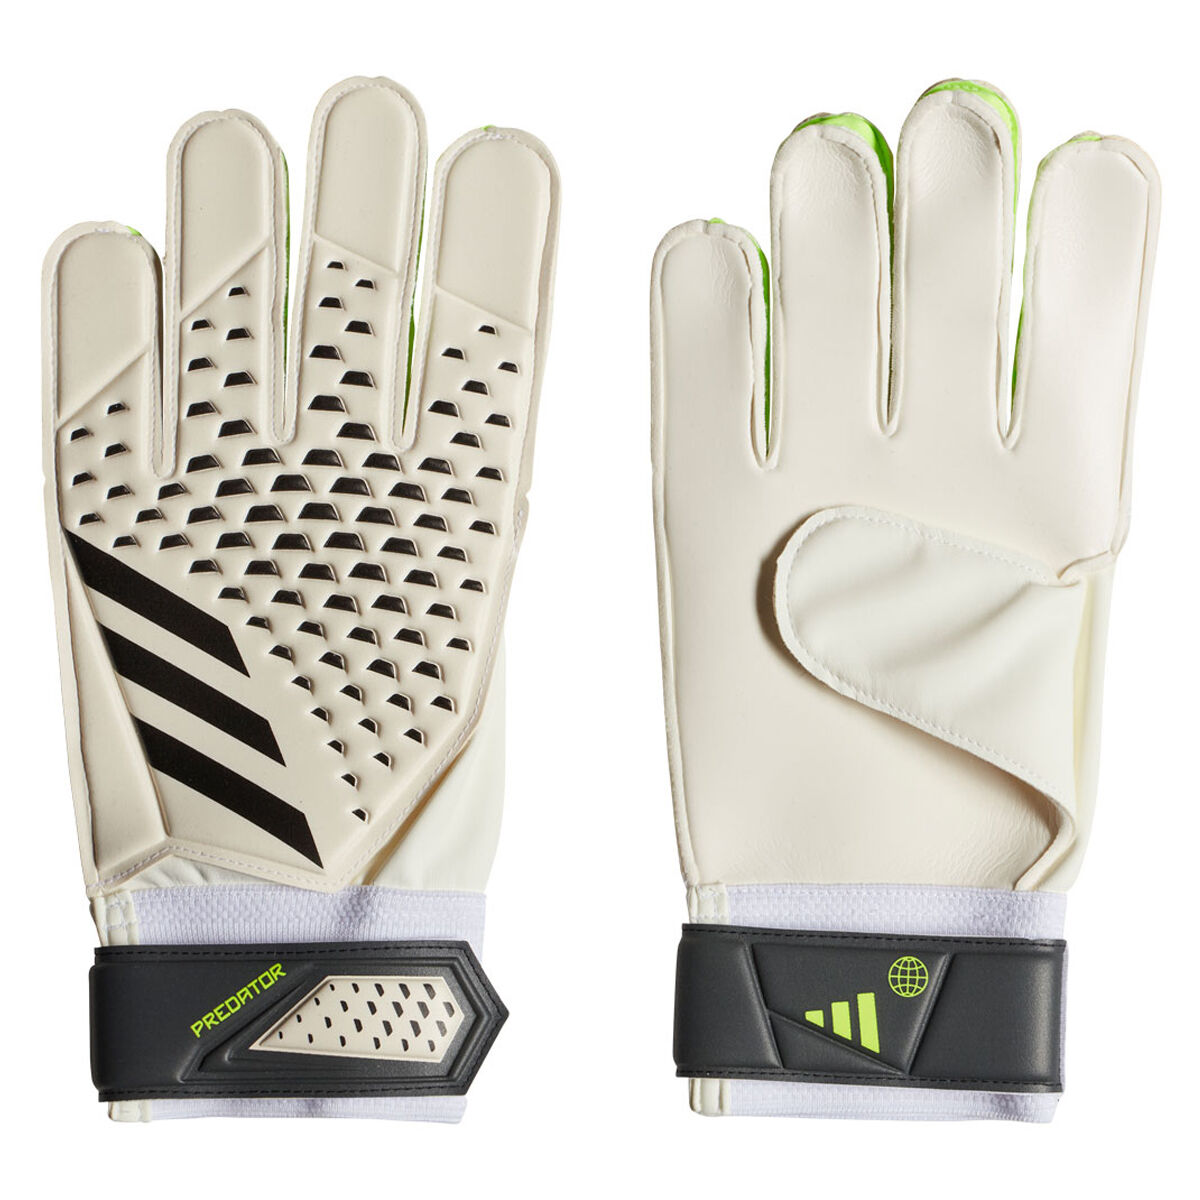 Umbro Junior Goalie Gloves, Latex palm provides flexibility